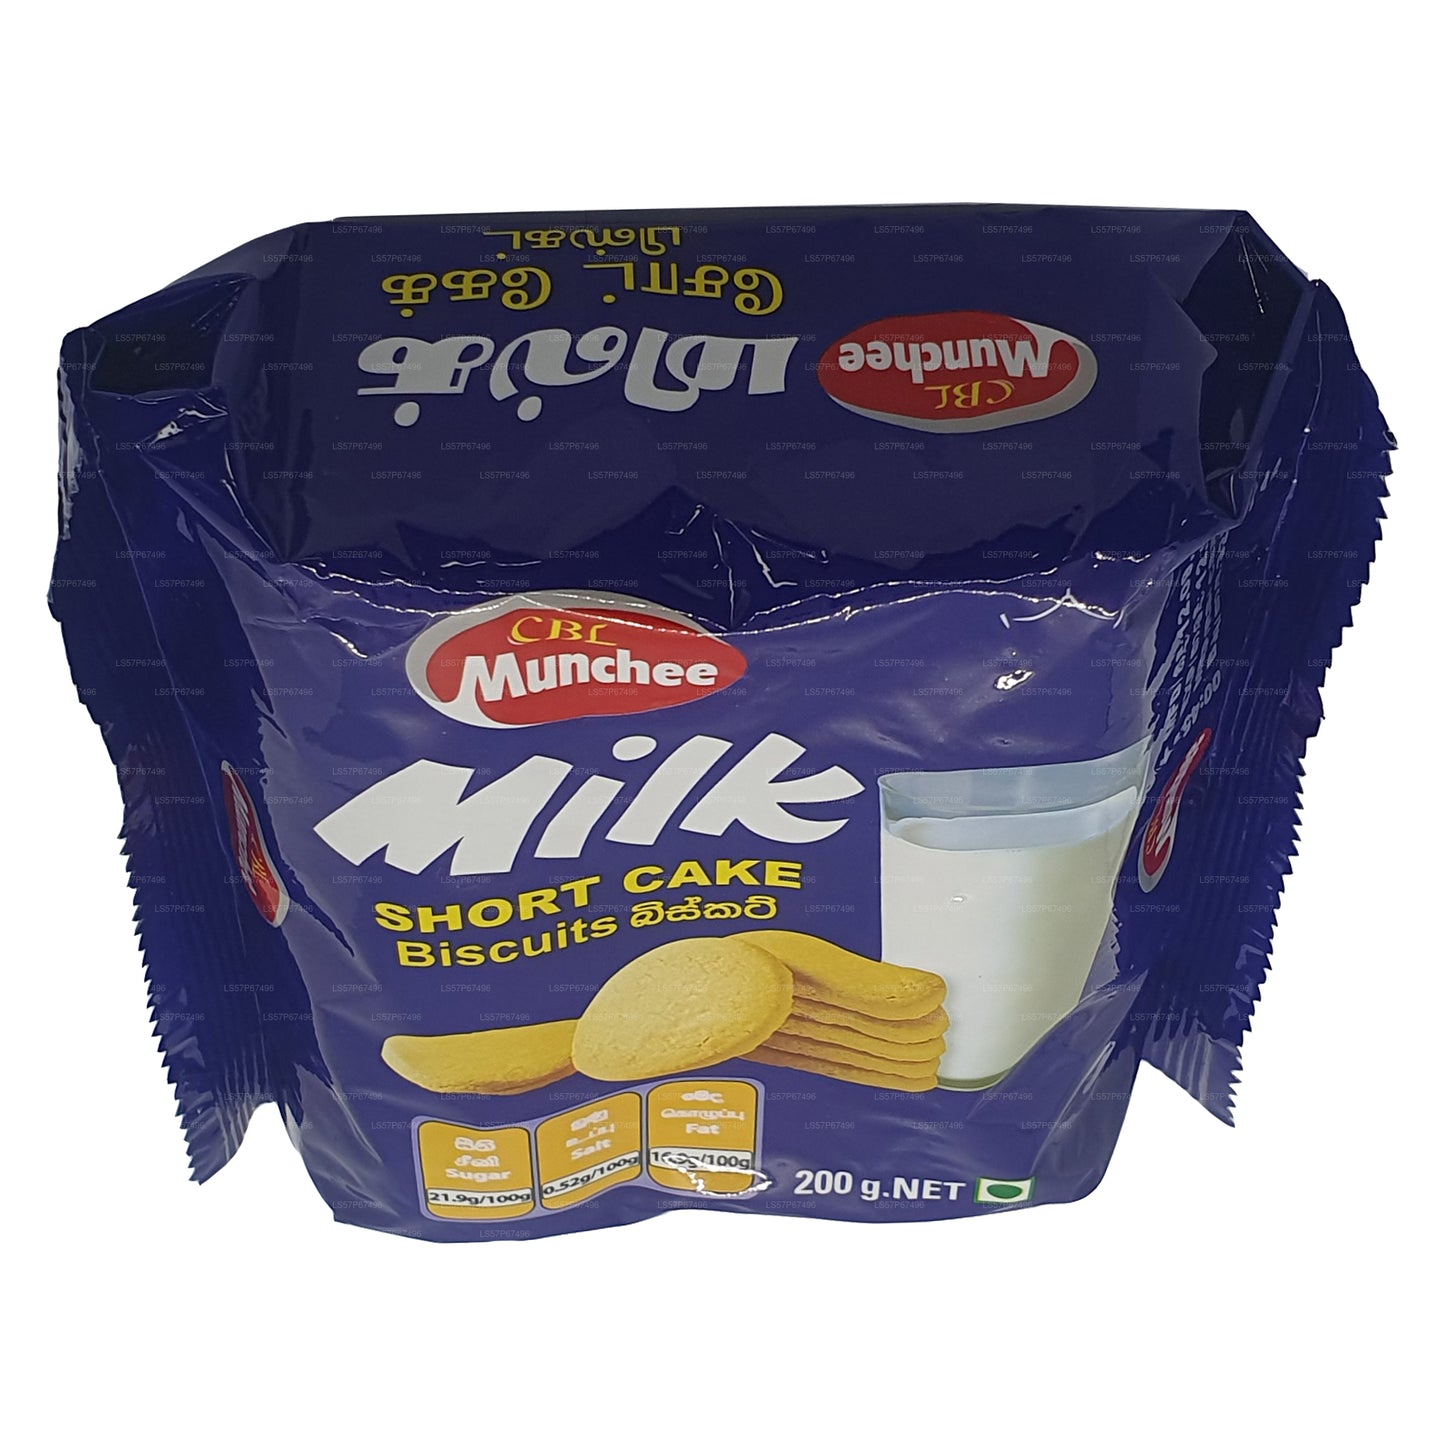 Munchee Milk Short Cake Biscuits (200g)